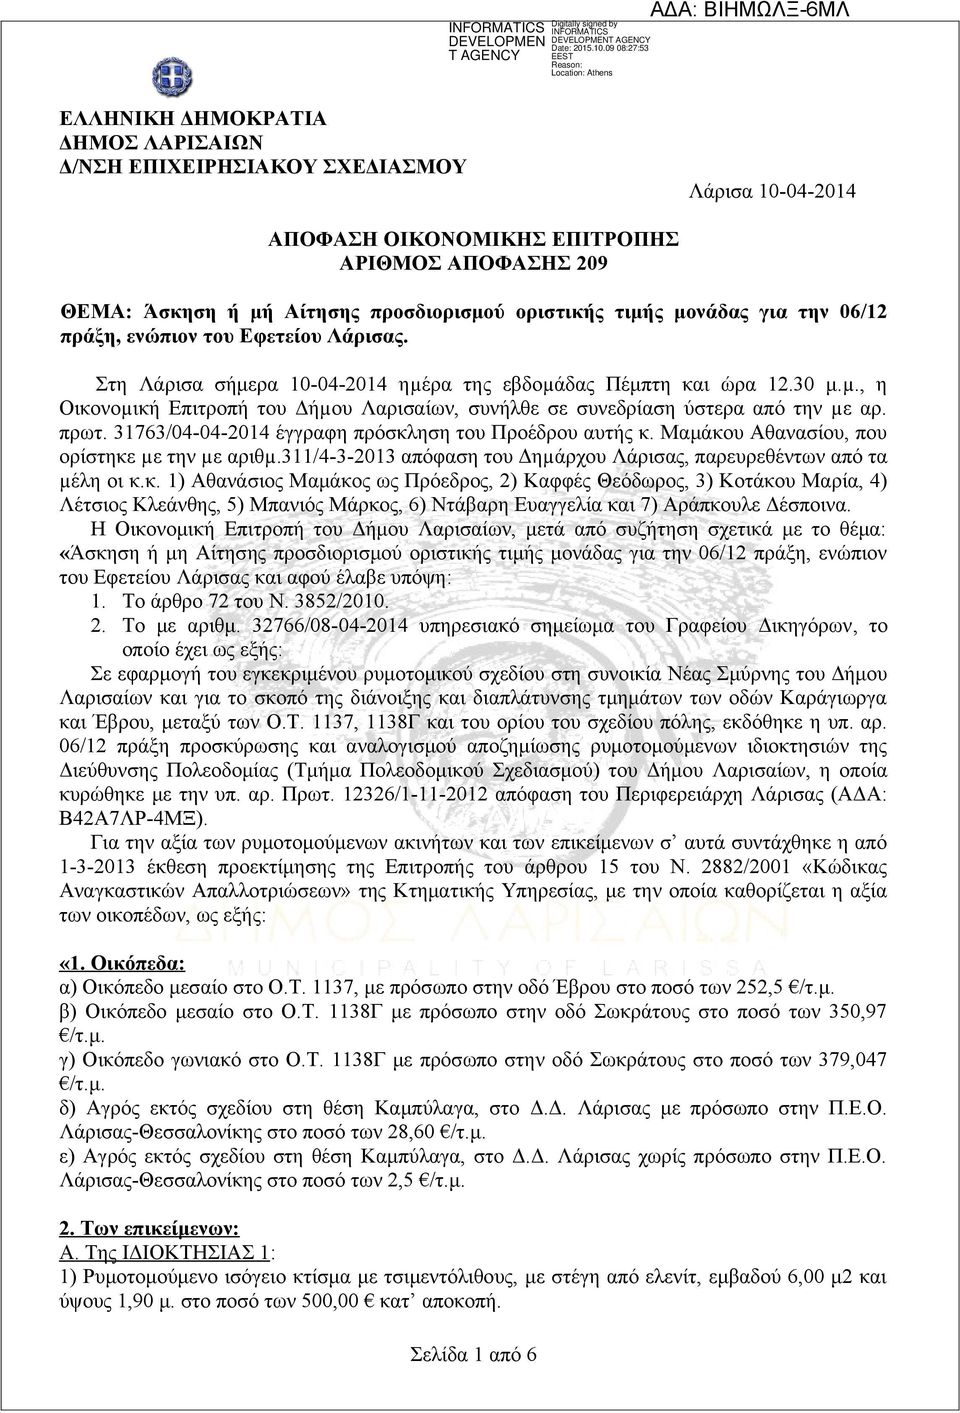 πρωτ. 31763/04-04-2014 έγγραφη πρόσκληση του Προέδρου αυτής κ. Μαμάκου Αθανασίου, που ορίστηκε µε την µε αριθµ.311/4-3-2013 απόφαση του Δηµάρχου Λάρισας, παρευρεθέντων από τα µέλη οι κ.κ. 1) Αθανάσιος Μαμάκος ως Πρόεδρος, 2) Καφφές Θεόδωρος, 3) Κοτάκου Μαρία, 4) Λέτσιος Κλεάνθης, 5) Μπανιός Μάρκος, 6) Ντάβαρη Ευαγγελία και 7) Αράπκουλε Δέσποινα.